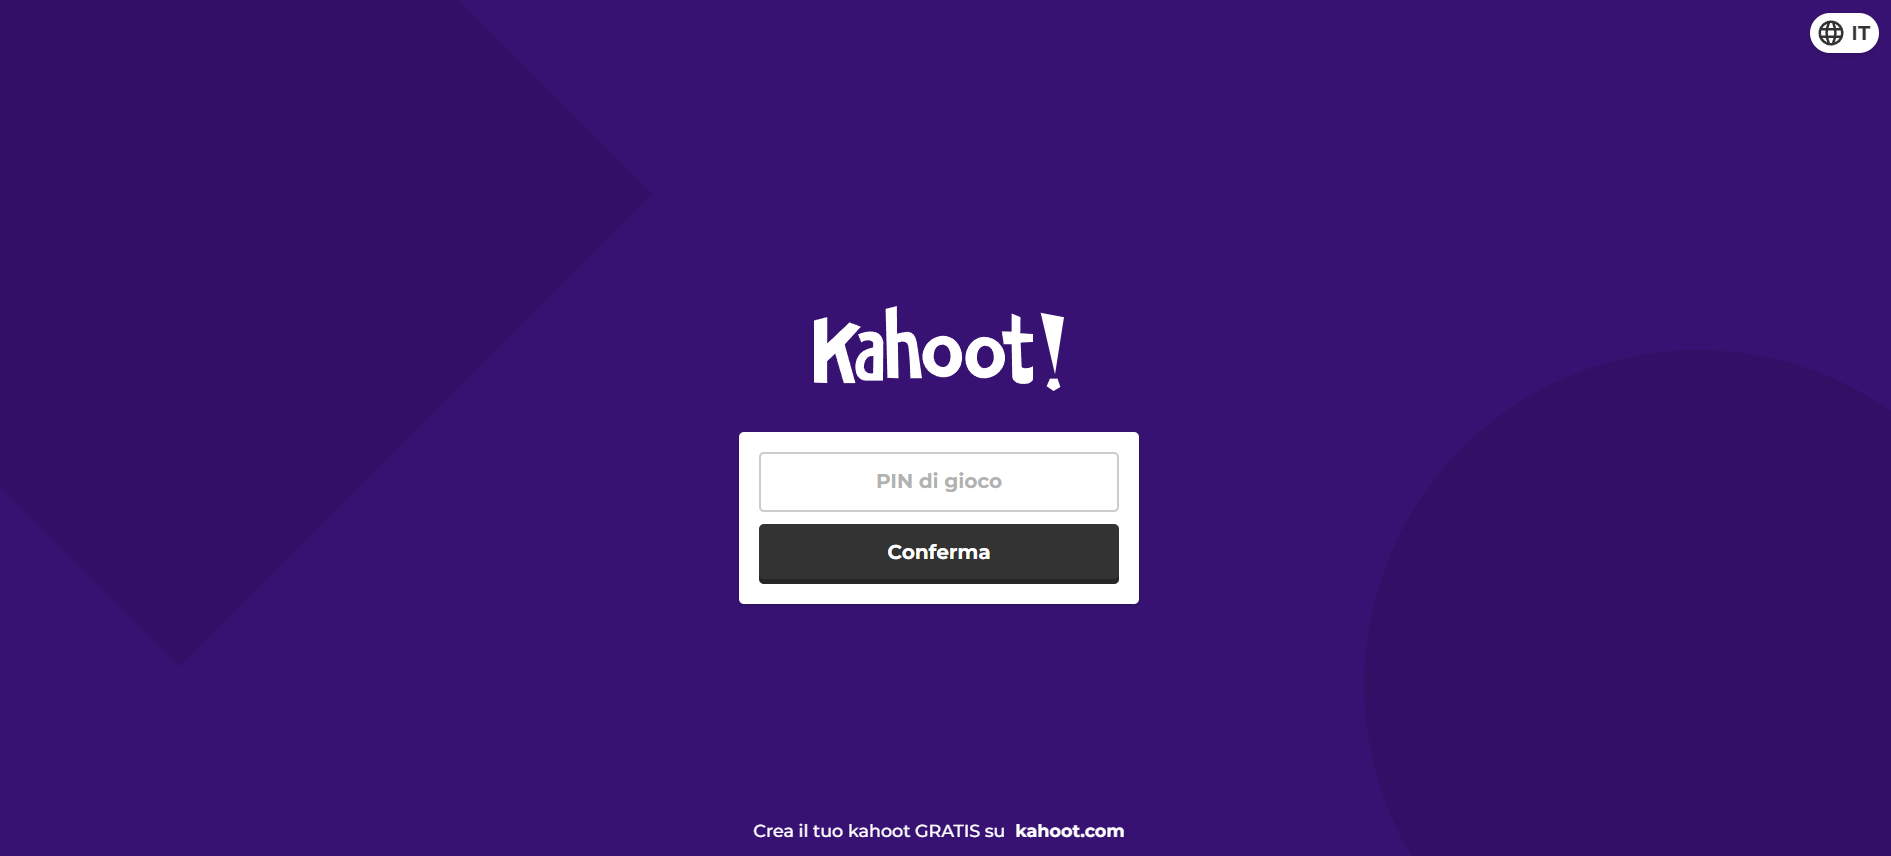 Kahoot home page